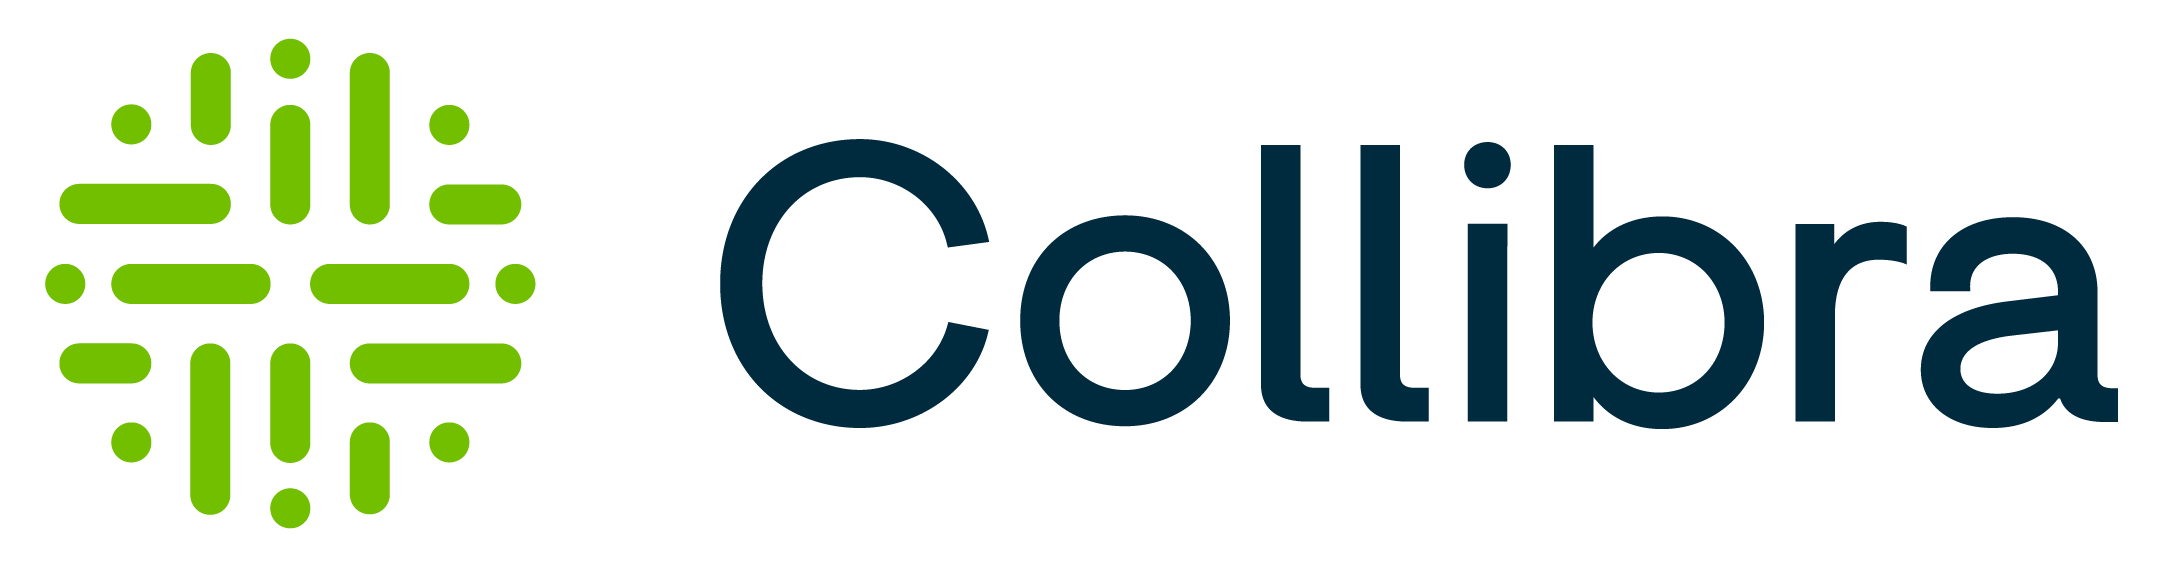 Collibra-Logo-RGB-FullColor